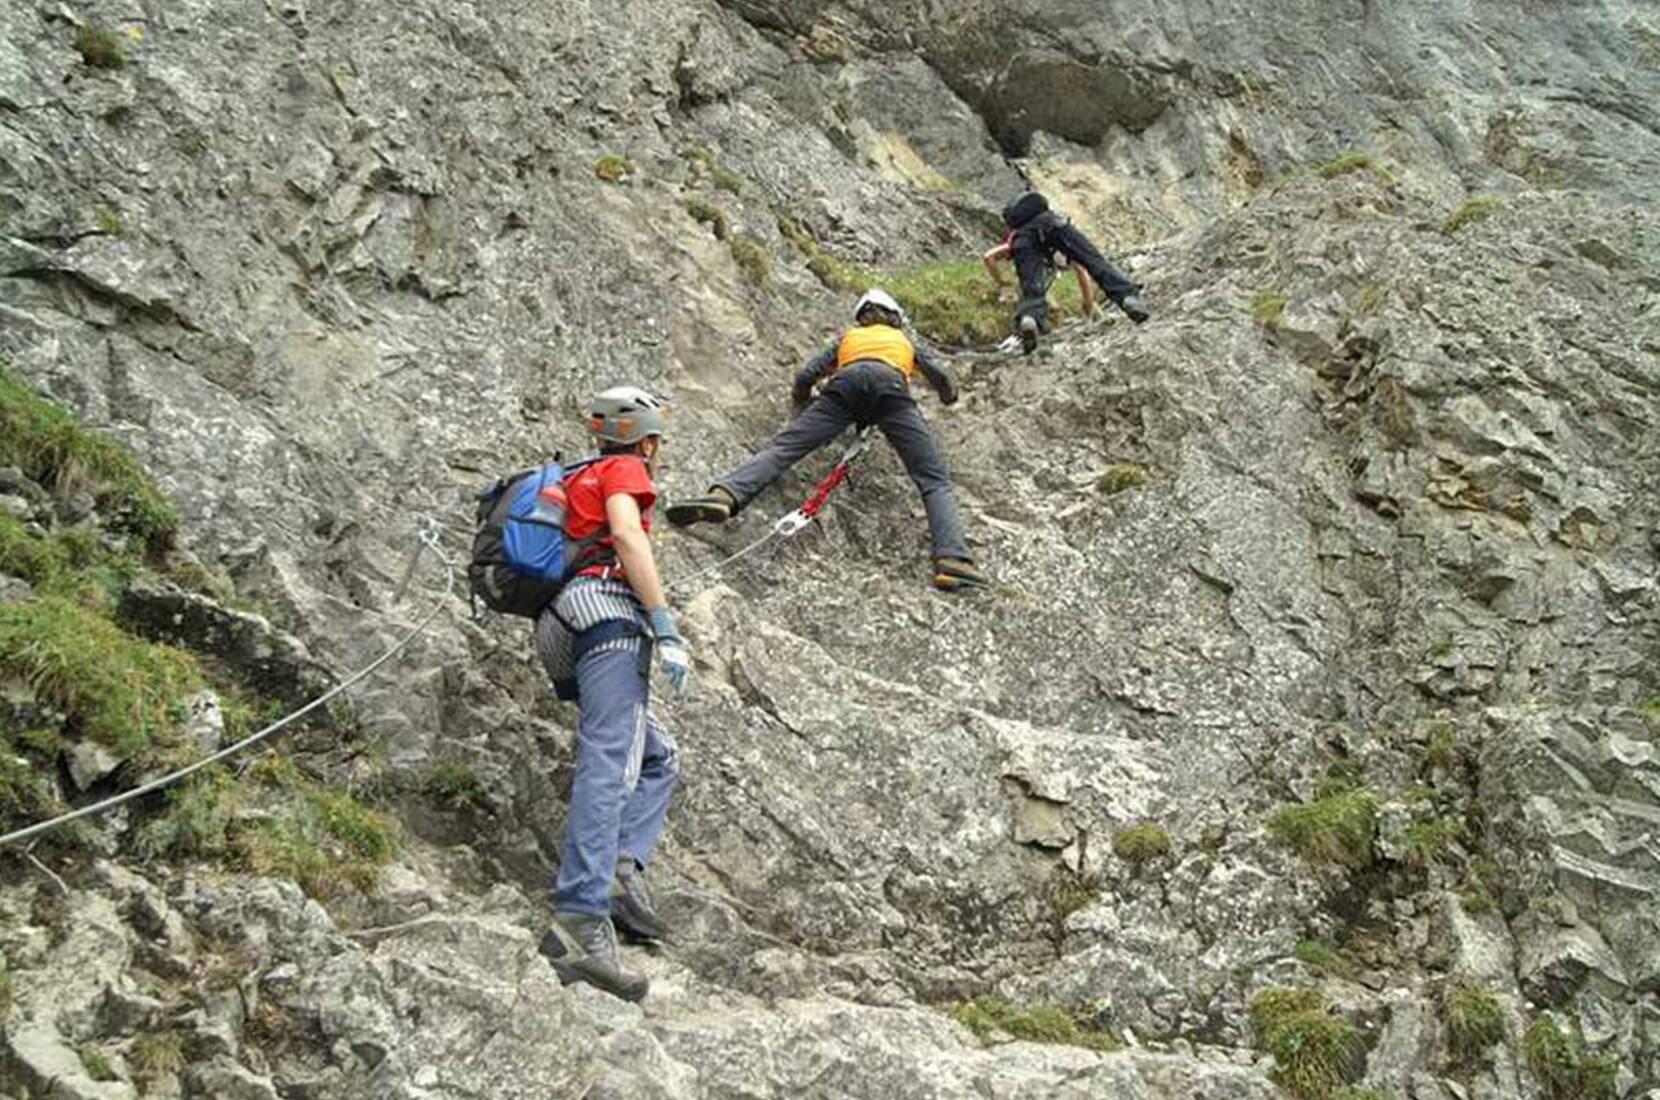 Buts d'excursion Berne – Sentier d'escalade Engstligenalp. Le défi sportif avec une vue panoramique fantastique dans l'Oberland bernois.